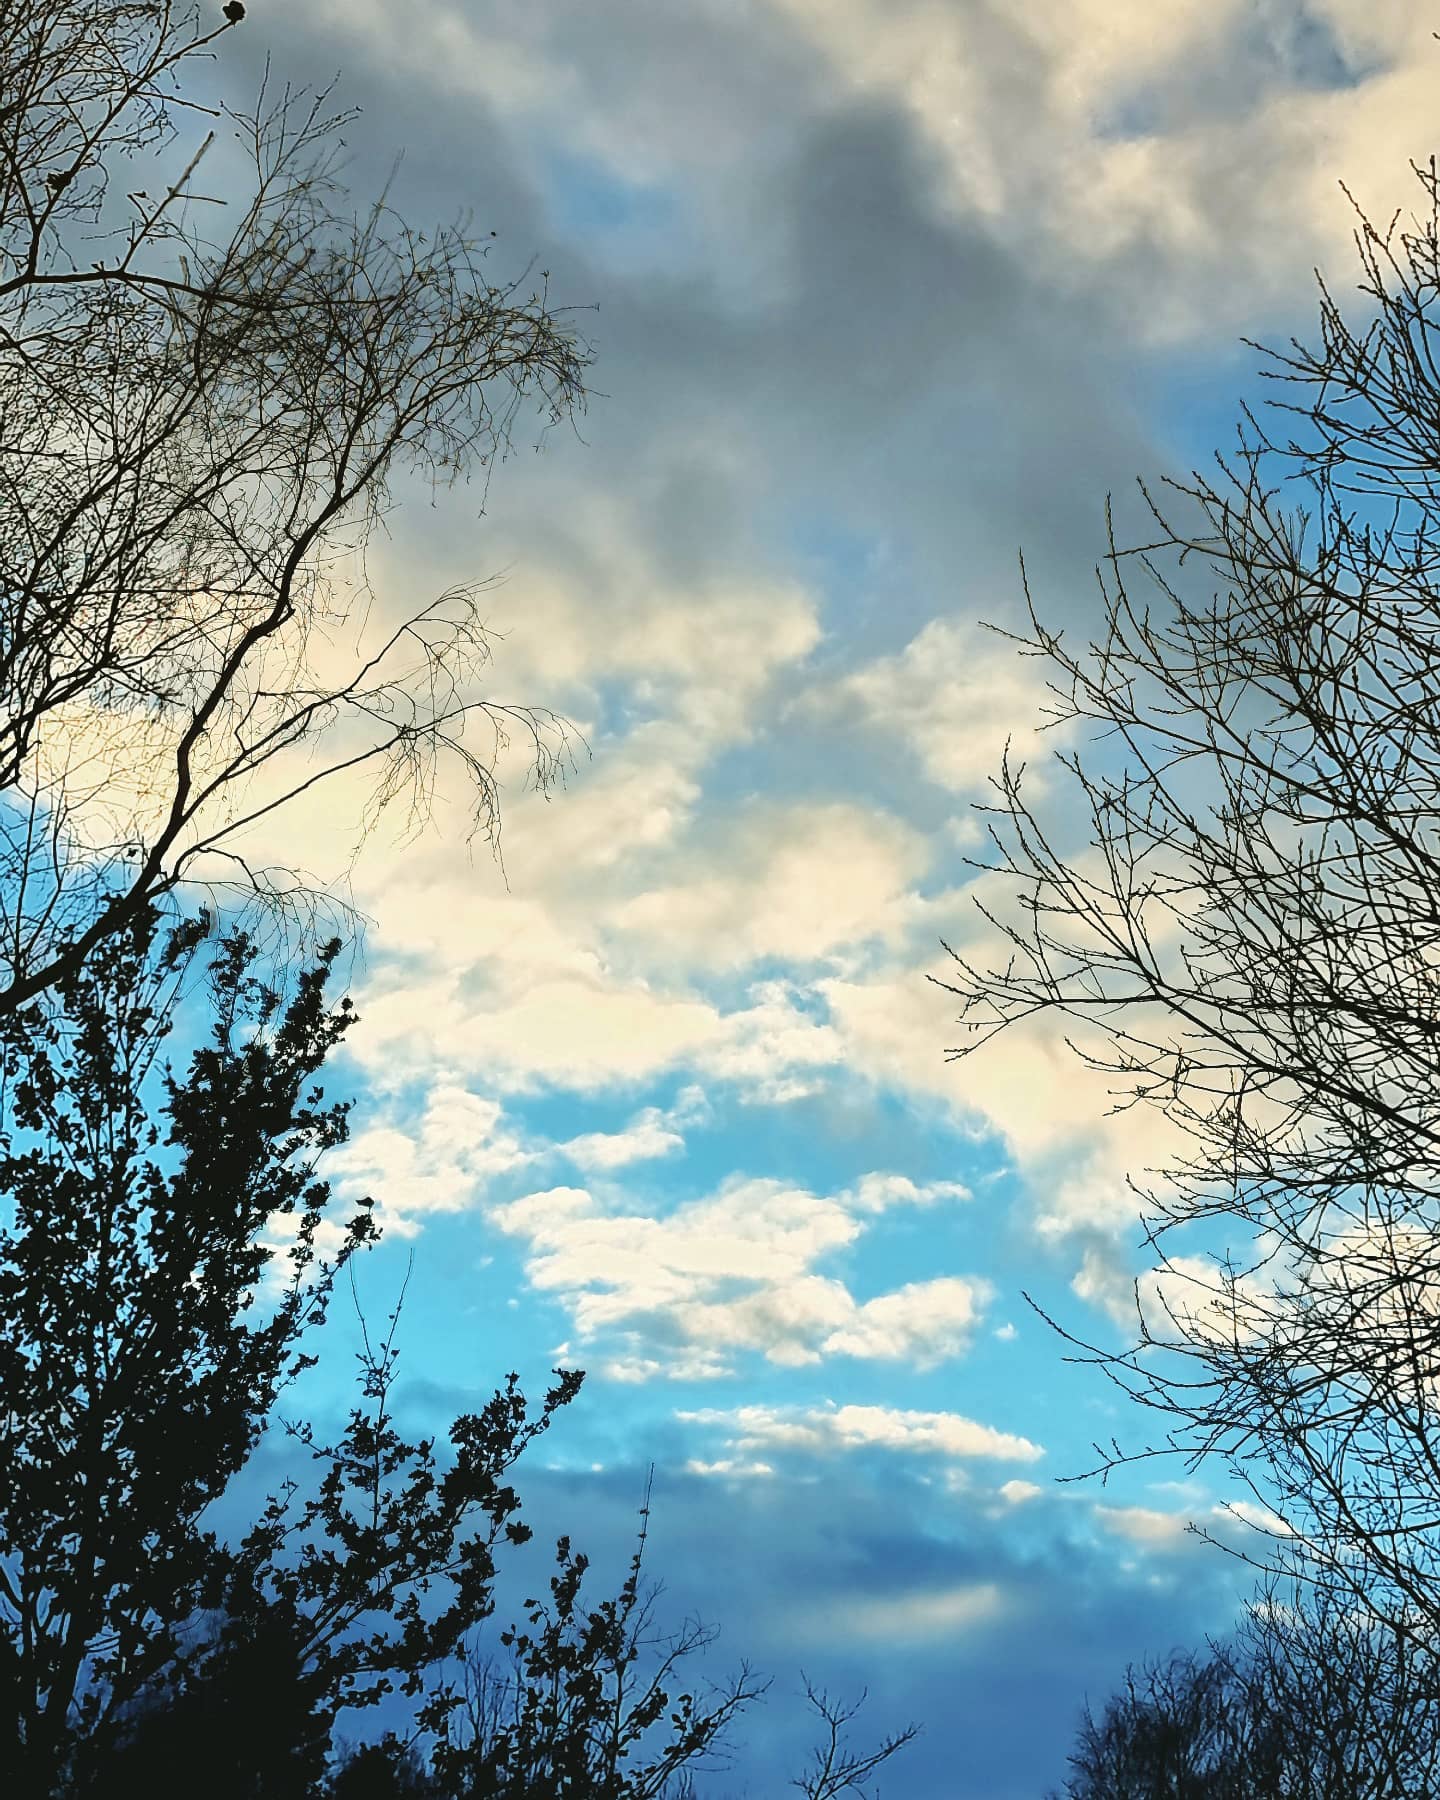 Nejkrásnější věci přicházejí v mezerách mezi vteřinami 🌟

Celou dobu vidím jen nudné kovové nebe a pak přišla chvilka plná barev. Dneska to mám zase za odměnu 😉❄️👍

#Kucharkazevsi #gurmanka #sky #nebe #zima #stmivani #czechnaturephoto #fotimeprirodu